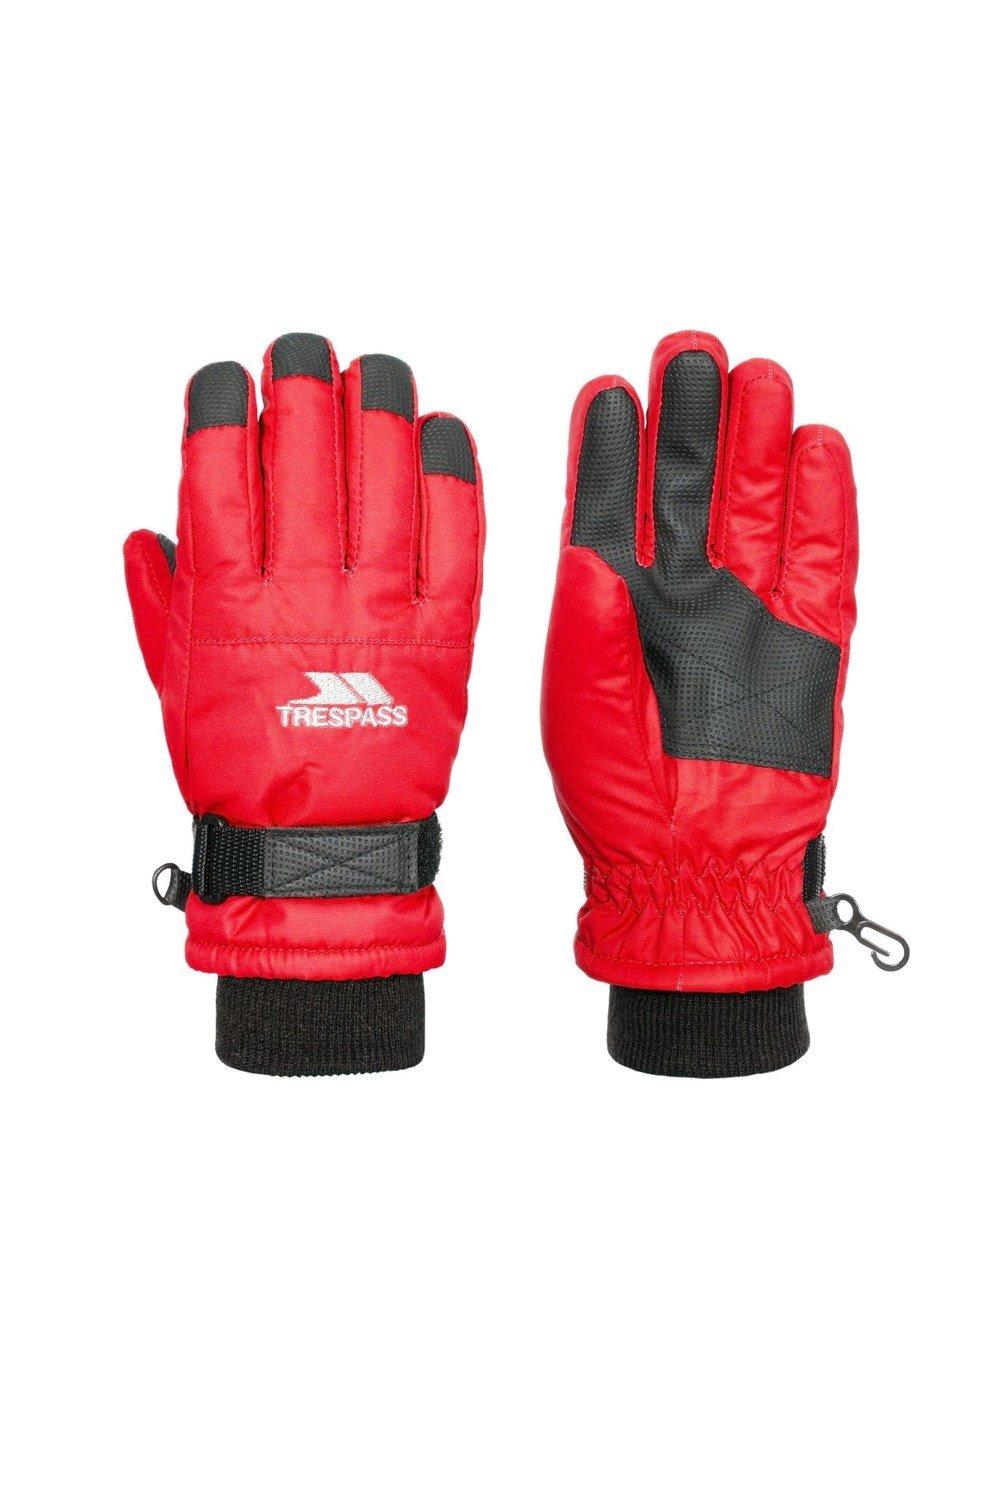 Лыжные перчатки Рури II Trespass, красный пара большие легкие перчатки с точным захватом эластичное запястье рабочие перчатки loops мультиколор